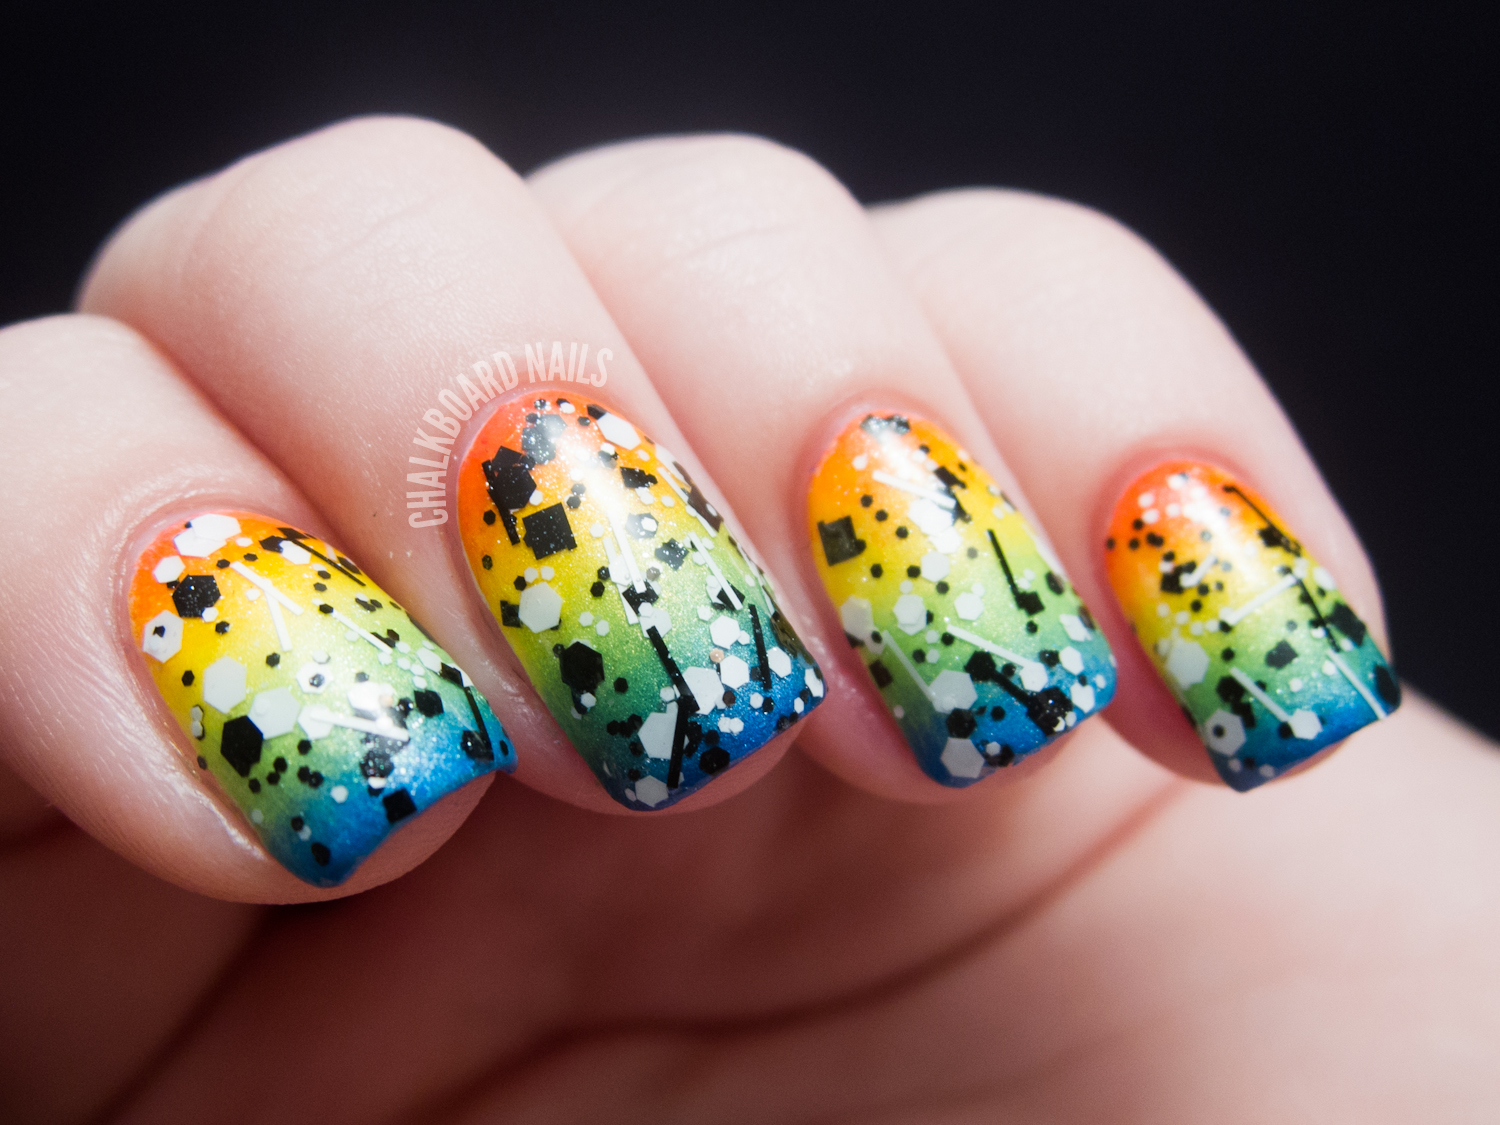 31DC2012: Day 09, Rainbow Nails | Chalkboard Nails | Nail Art Blog